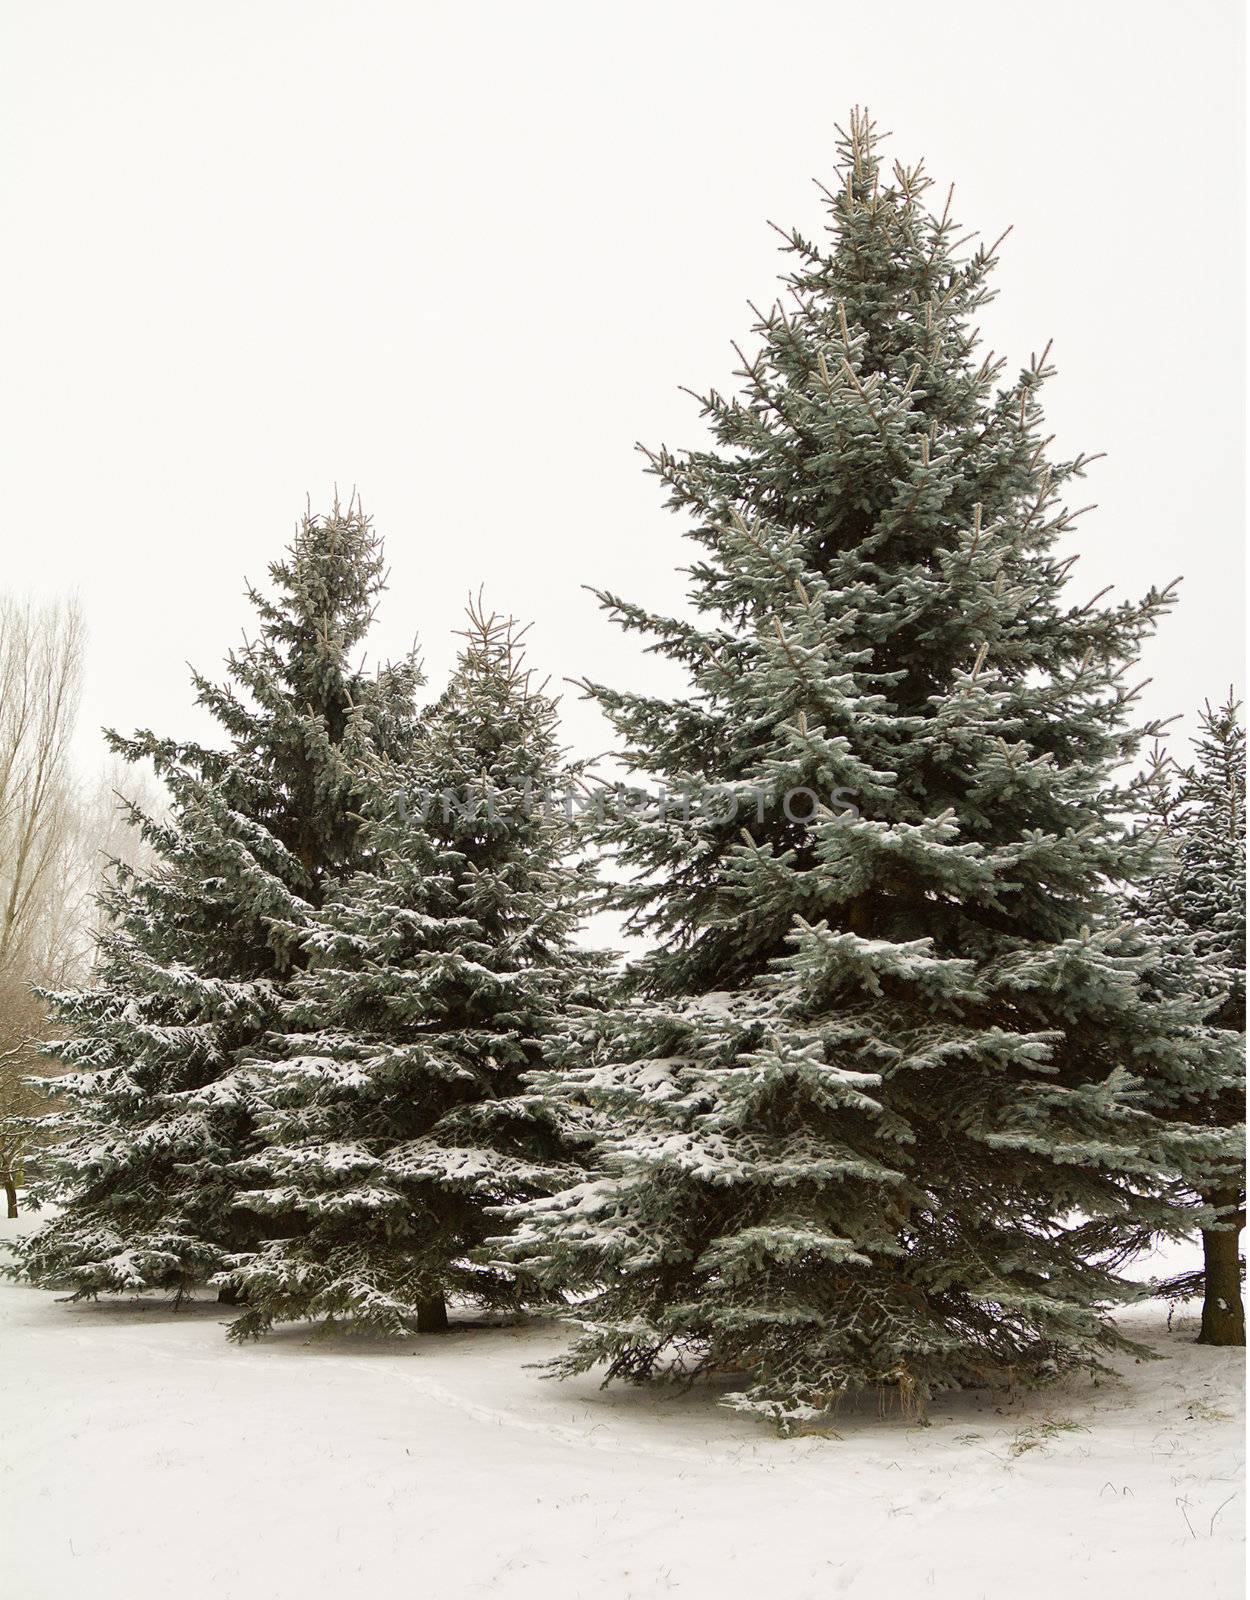 december fir trees in snow